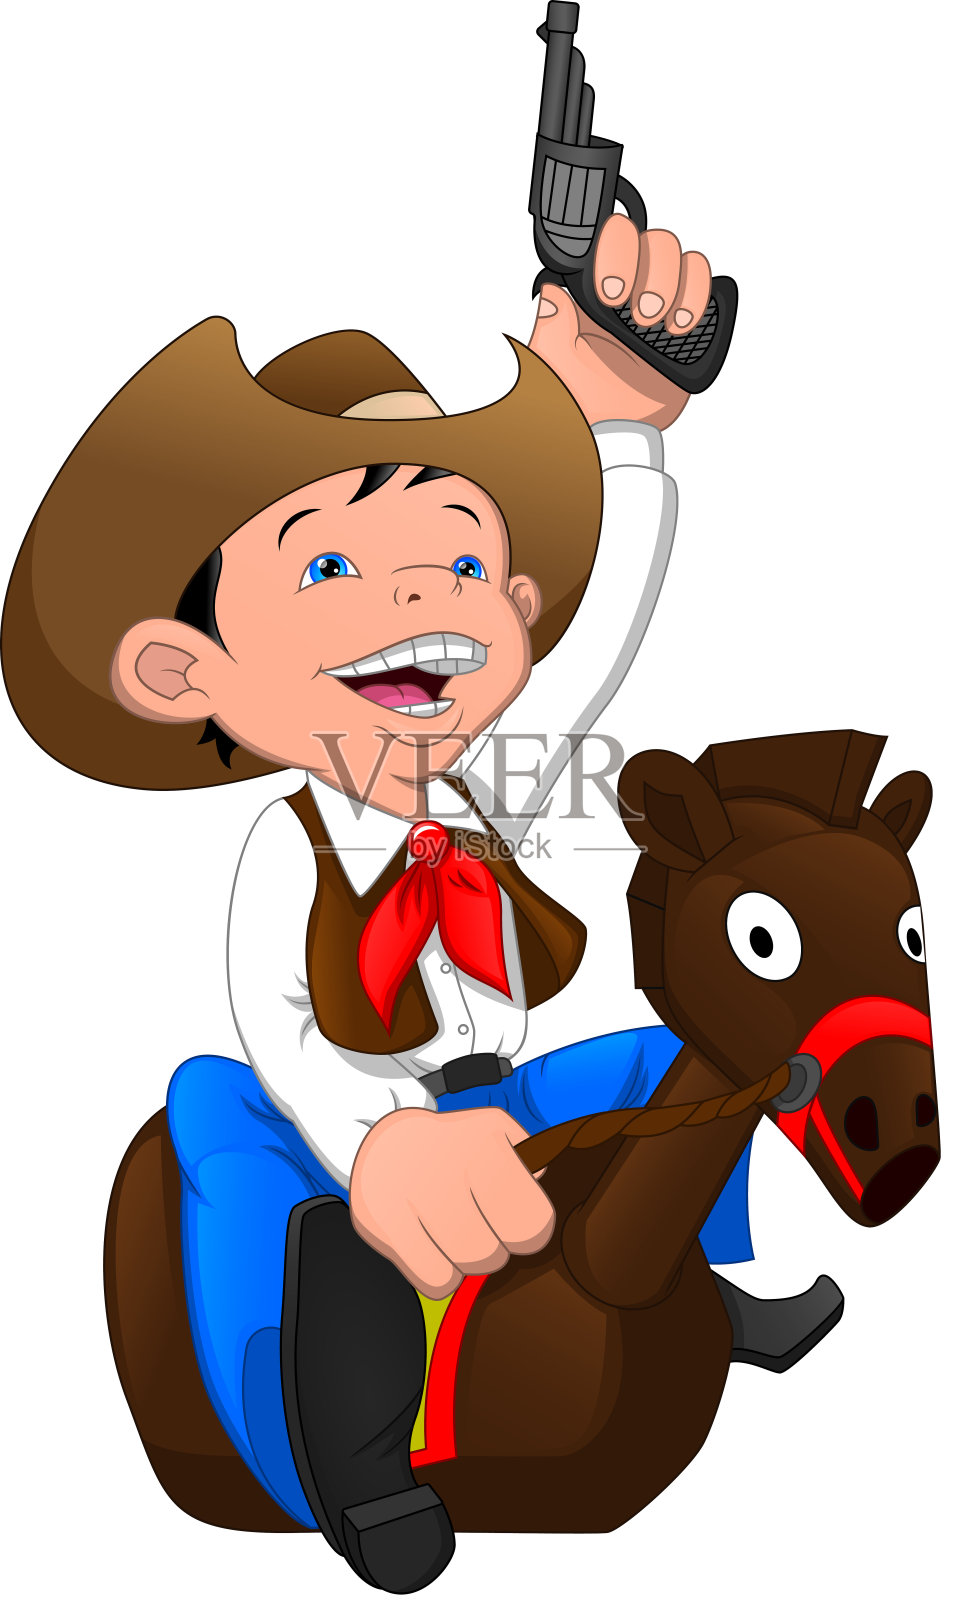 可爱的牛仔小子骑着小猪马玩具设计元素图片